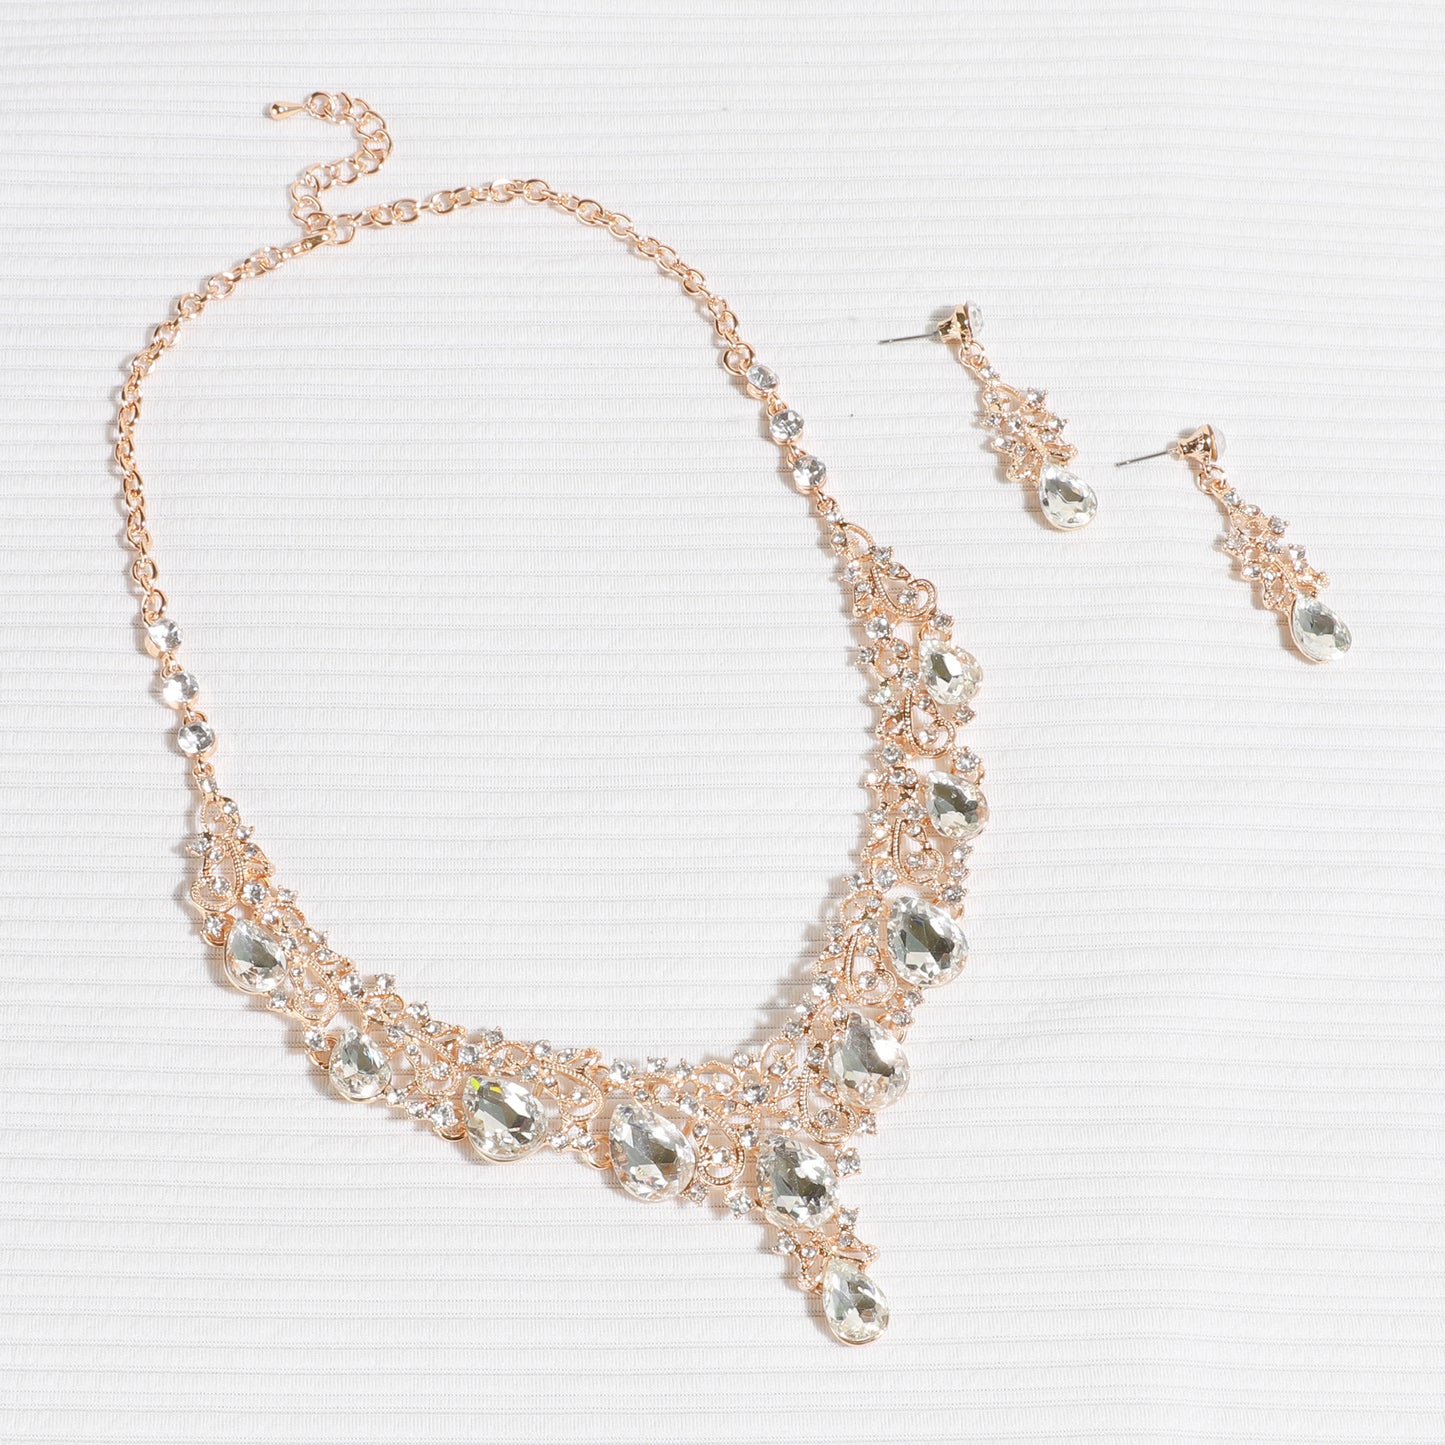 Amalfi Rhinestone Vine Necklace & Earring Set - Gold